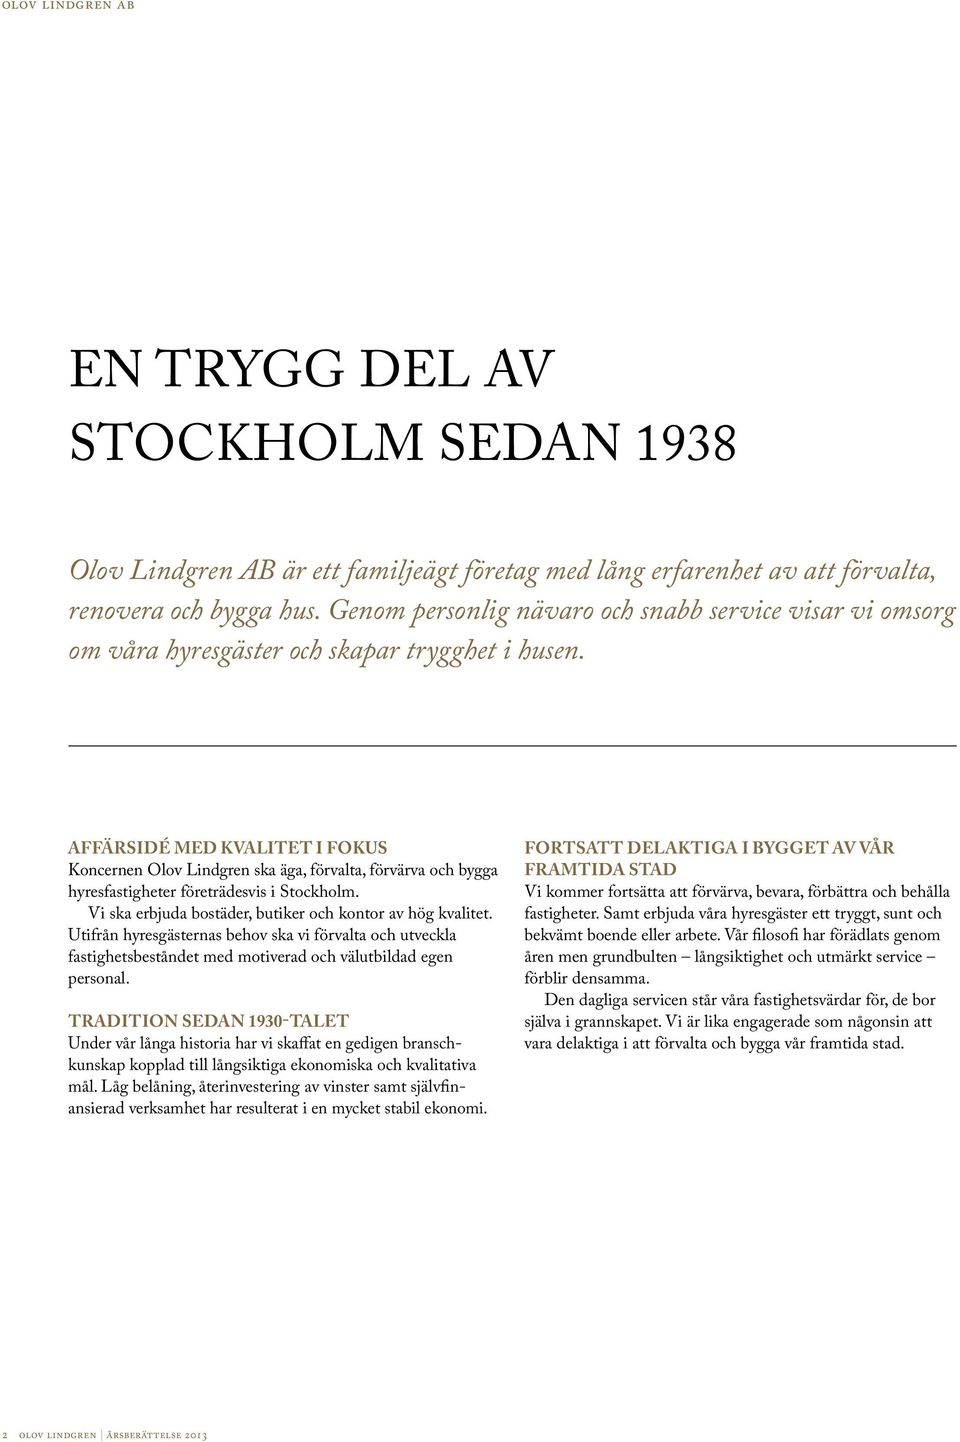 Affärsidé med kvalitet i fokus Koncernen Olov Lindgren ska äga, förvalta, förvärva och bygga hyresfastigheter företrädesvis i Stockholm. Vi ska erbjuda bostäder, butiker och kontor av hög kvalitet.